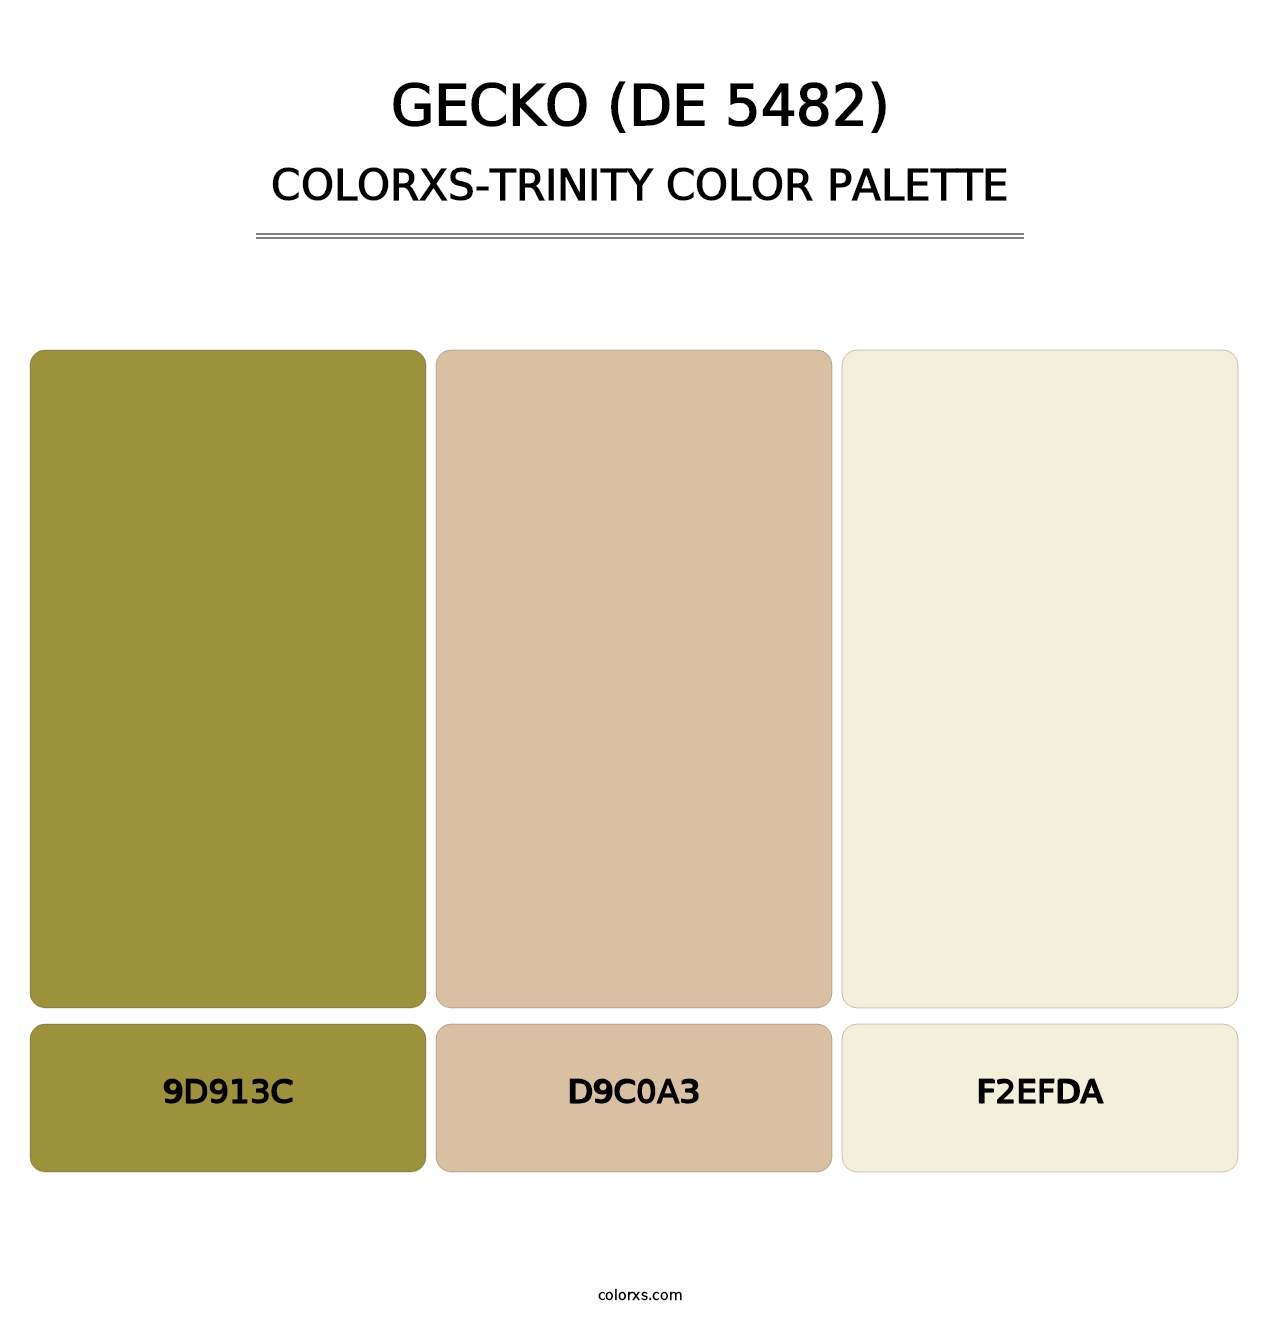 Gecko (DE 5482) - Colorxs Trinity Palette